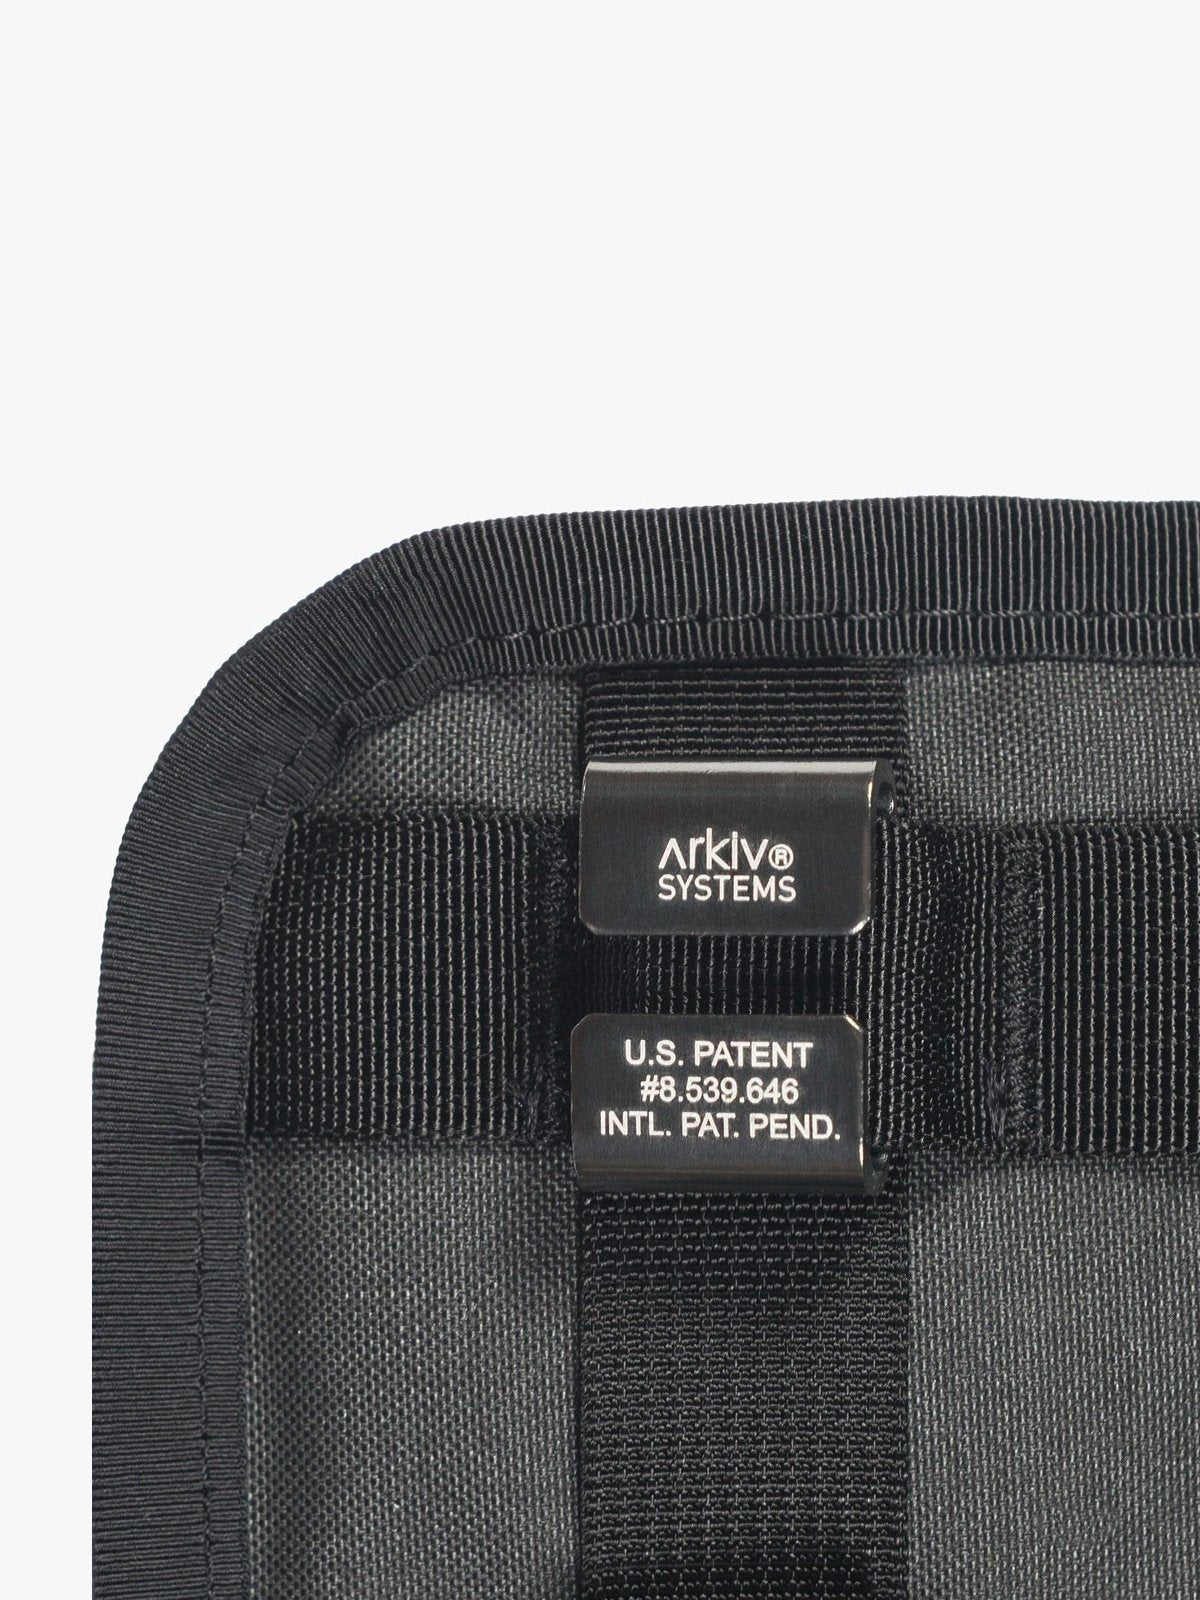 Arkiv Laptop Case by Mission Workshop - Weerbestendige tassen & technische kleding - San Francisco & Los Angeles - Gemaakt om te doorstaan - Voor altijd gegarandeerd